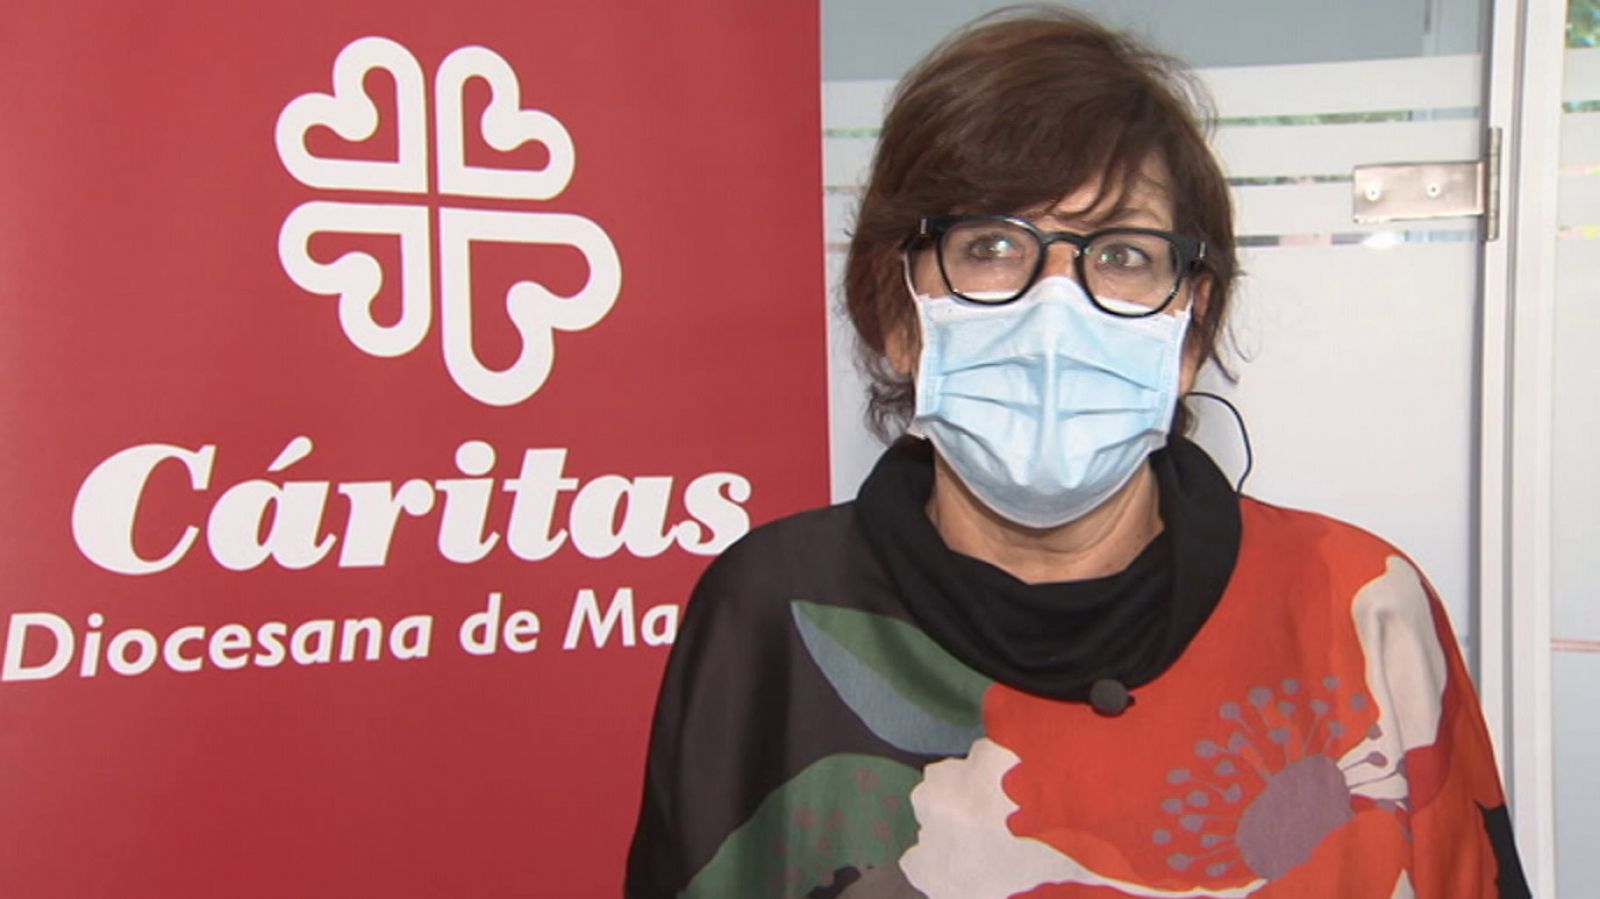 Testimonio - El drama de las personas sin hogar - RTVE.es